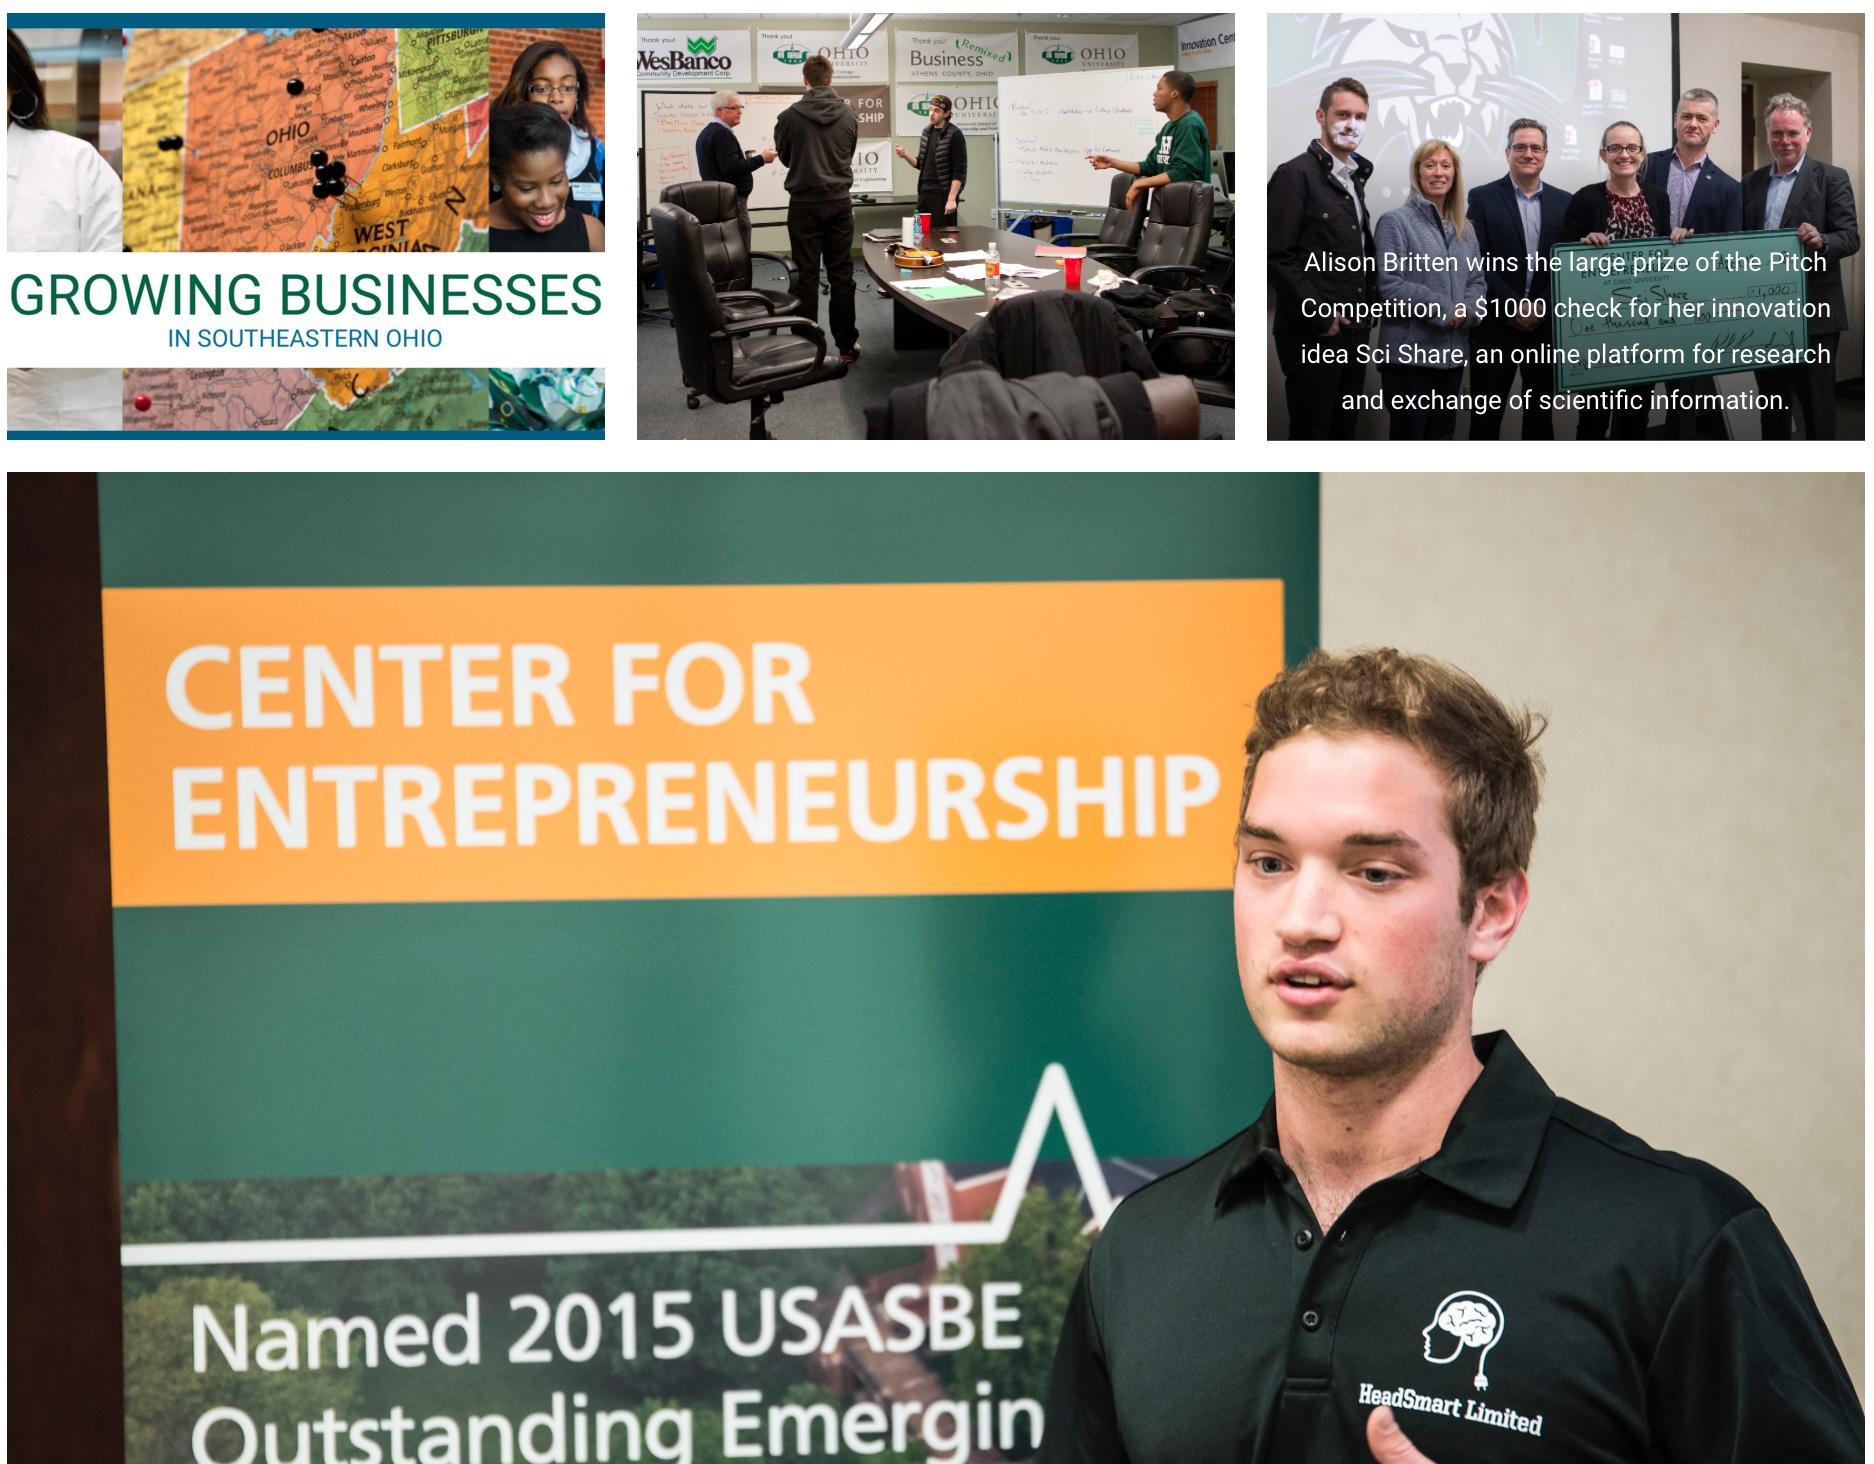 Man speaking in front of Center for Entrepreneurship poster